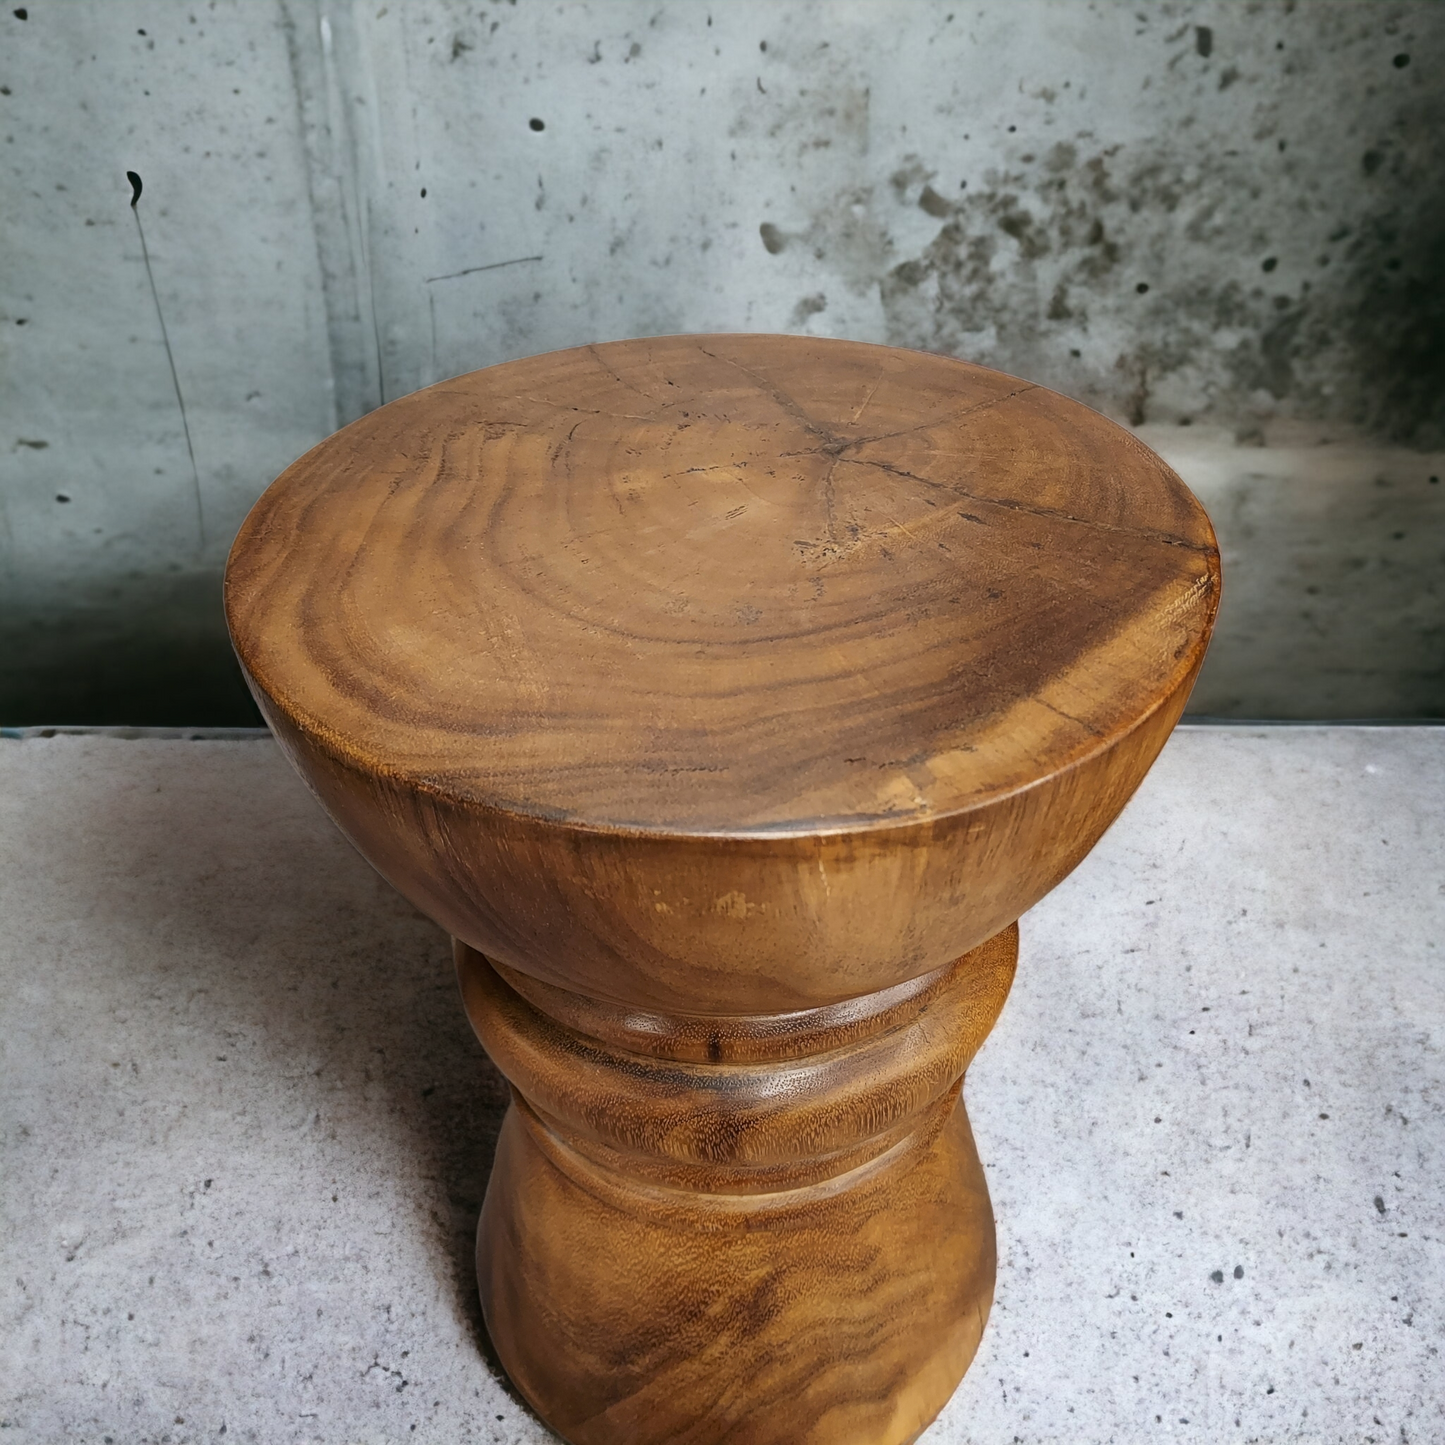 Pion suar wood sidetable (Display item)